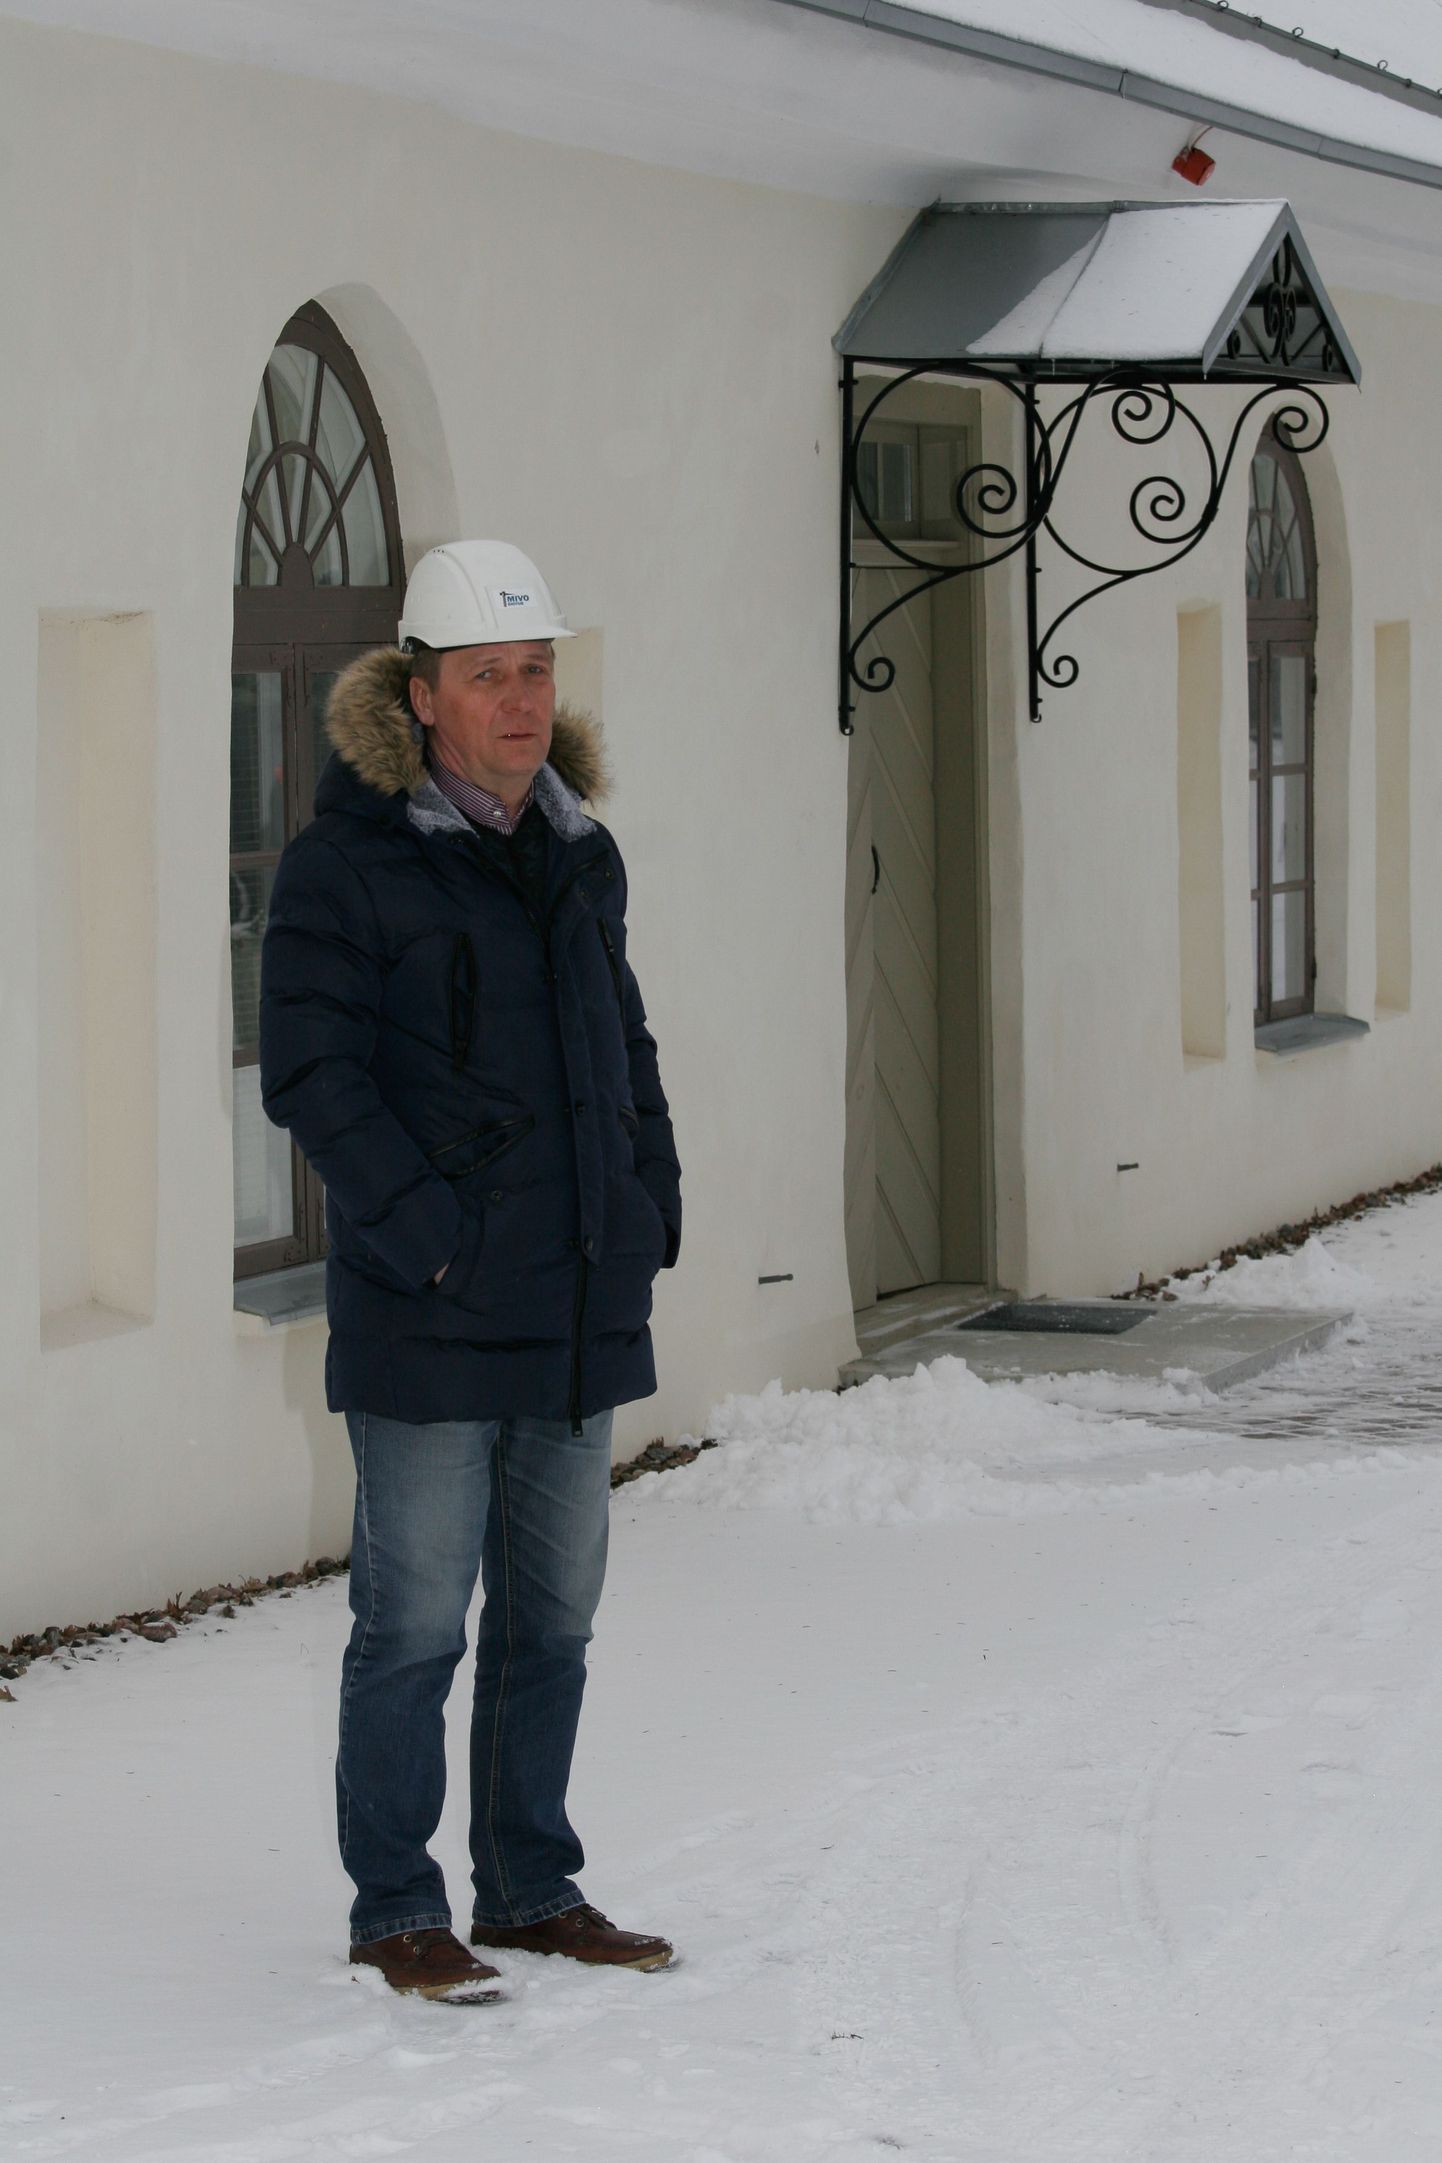 Mivo Ehituse juht ja omanik Avo Allikmäe tunneb erilist heameelt muinsuskaitselistel objektidel tehtud restaureerimistööde üle.